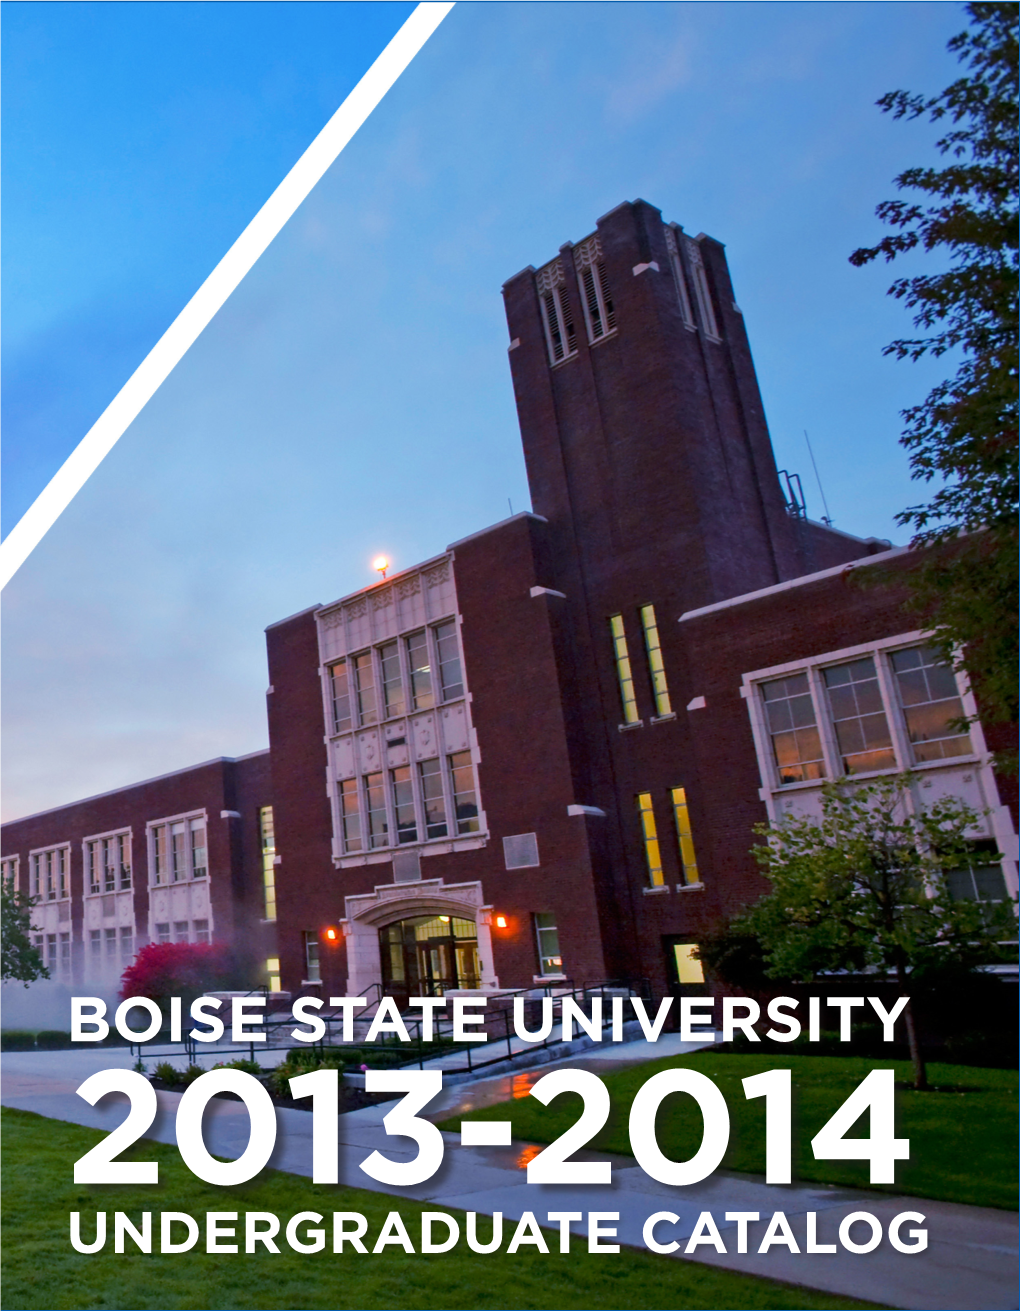 BOISE STATE UNIVERSITY 2013-2014 UNDERGRADUATE CATALOG How Can I Apply to Boise State University?